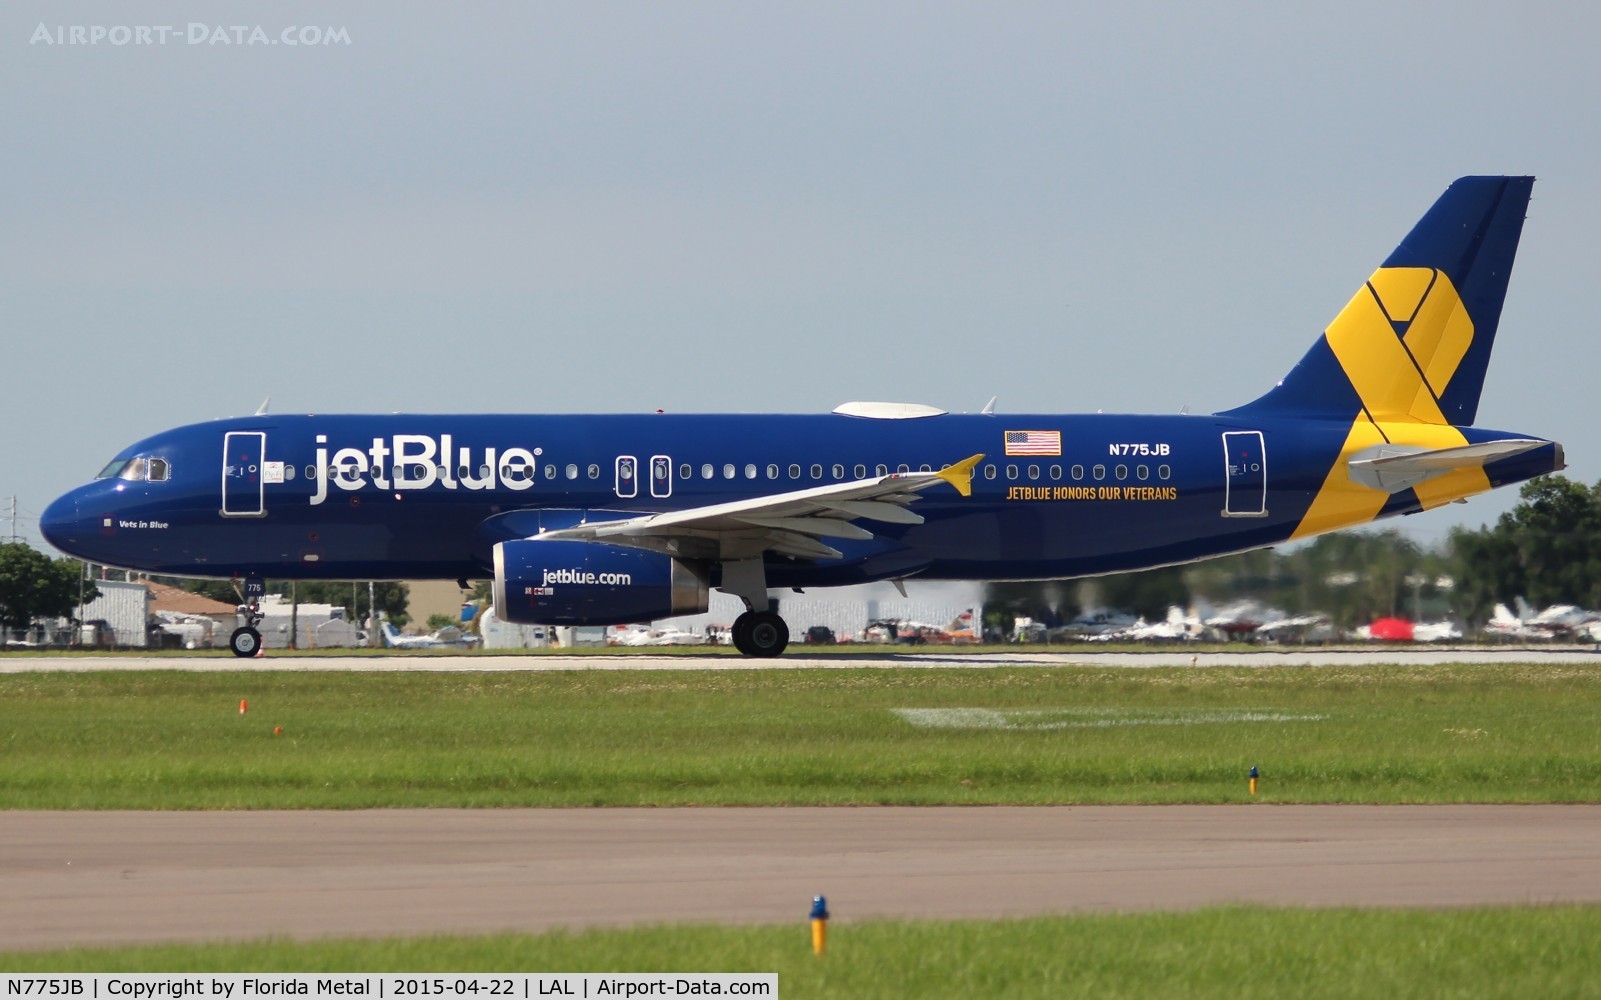 N775JB, 2009 Airbus A320-232 C/N 3800, Vets in Blue